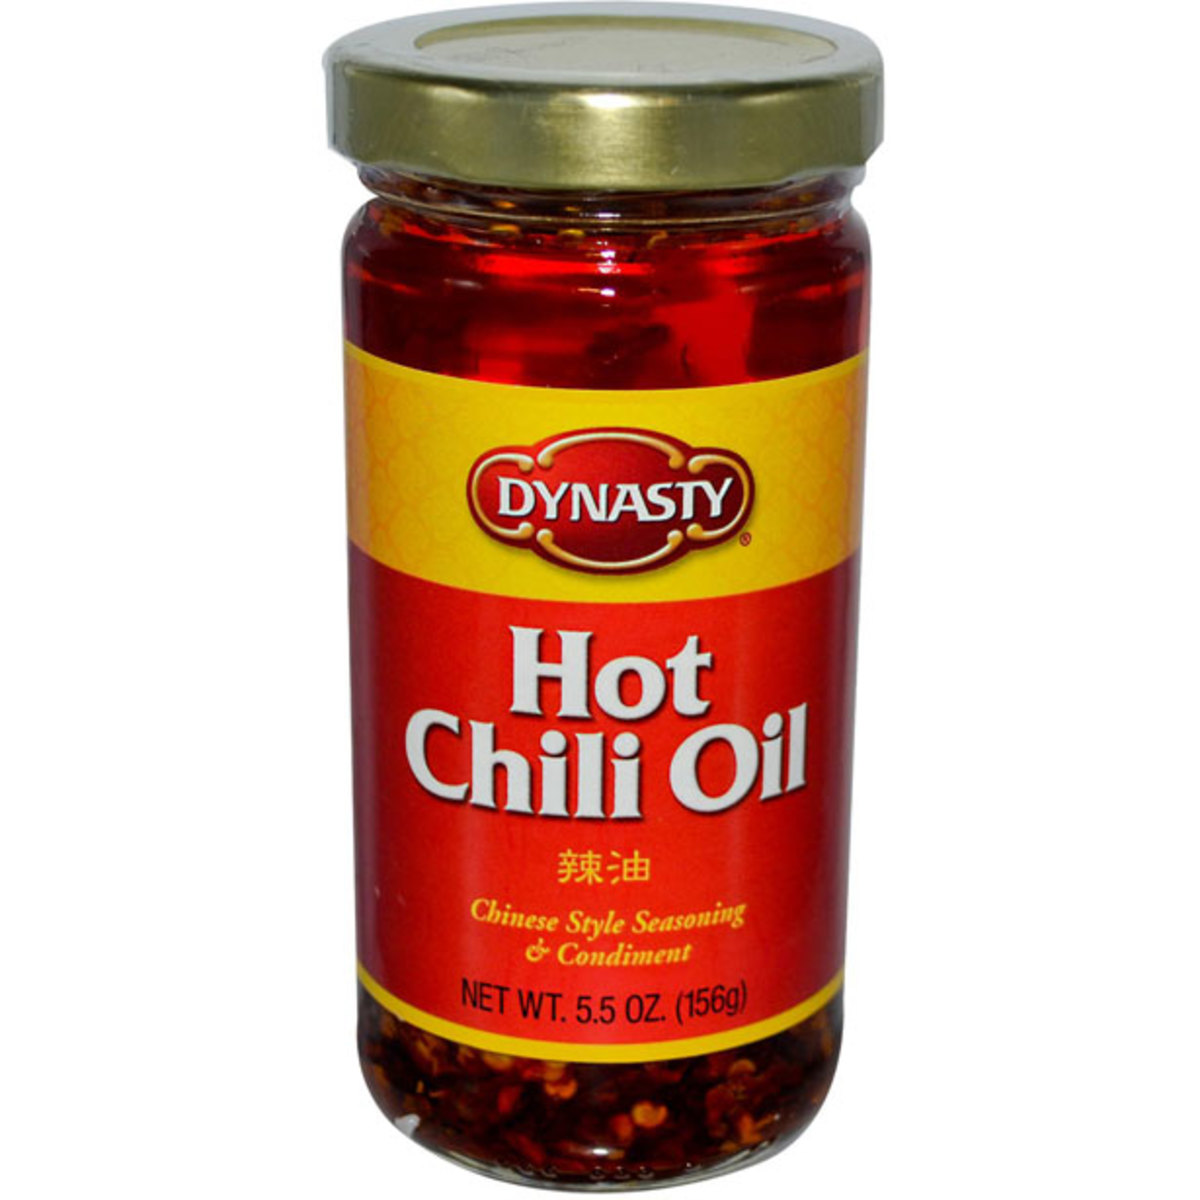 Hot-Chili-Oil